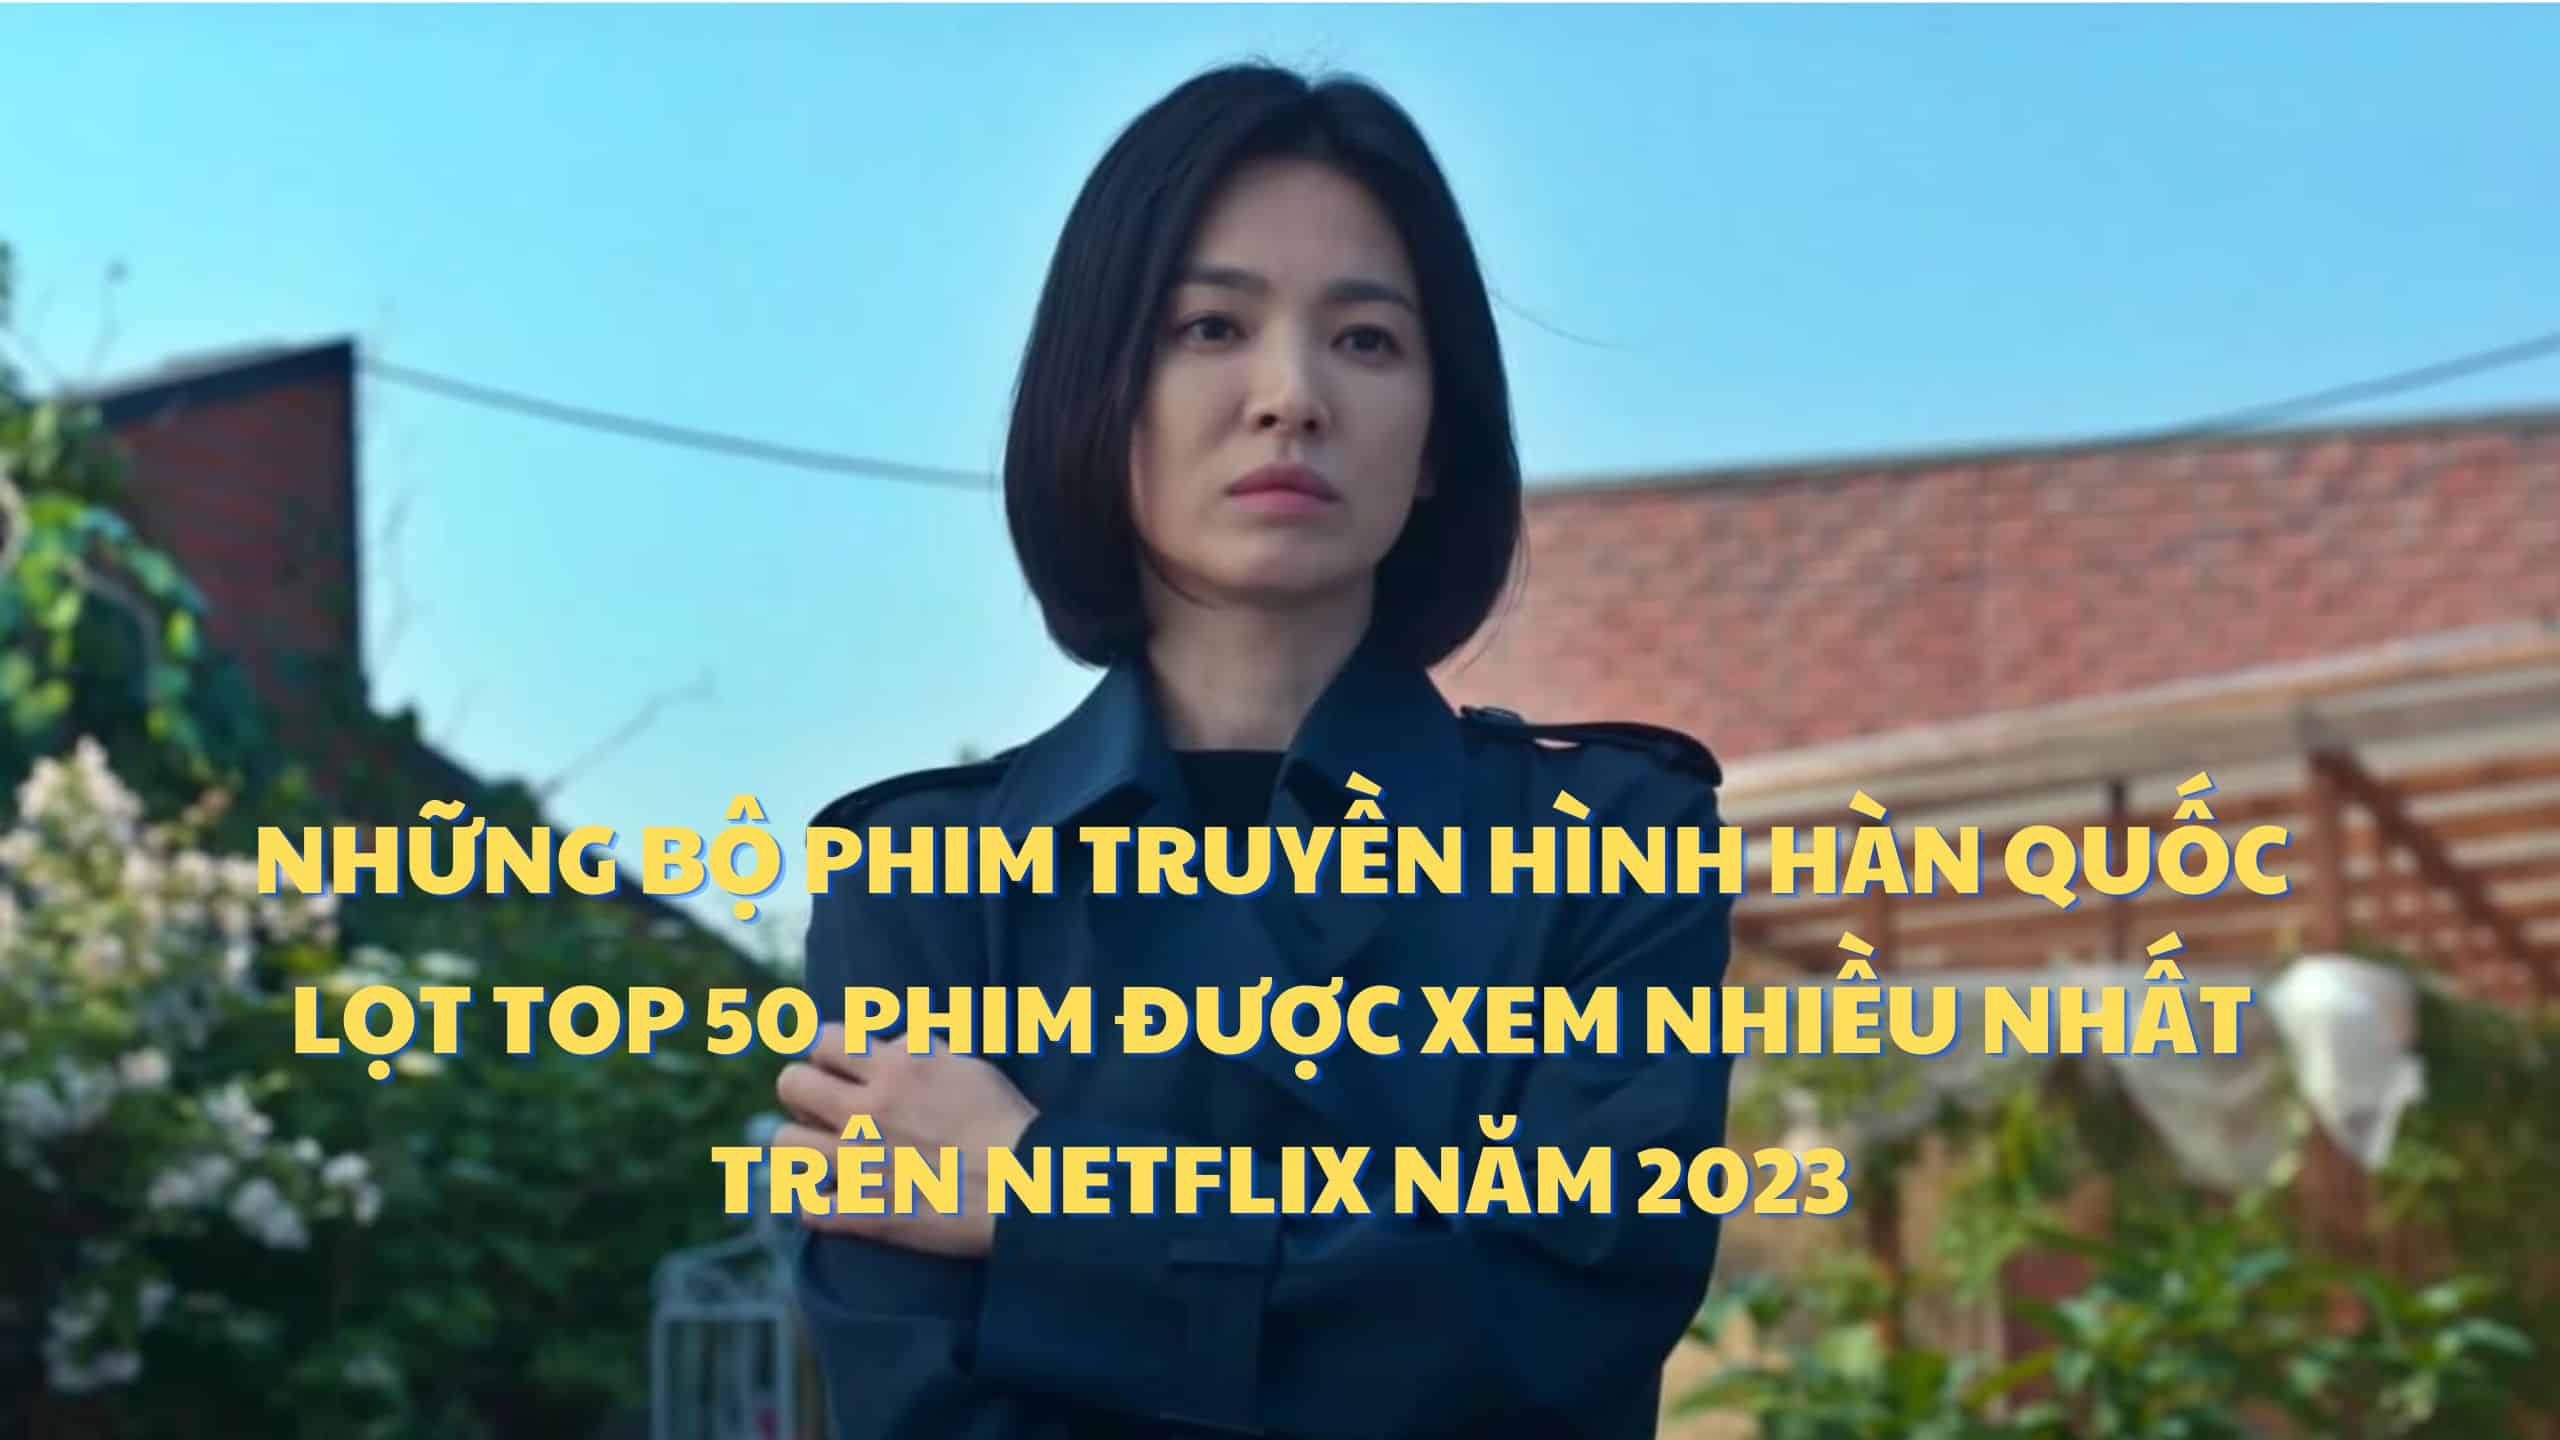 Những bộ phim truyền hình Hàn Quốc lọt top 50 phim được xem nhiều nhất trên Netflix nửa đầu năm 2023